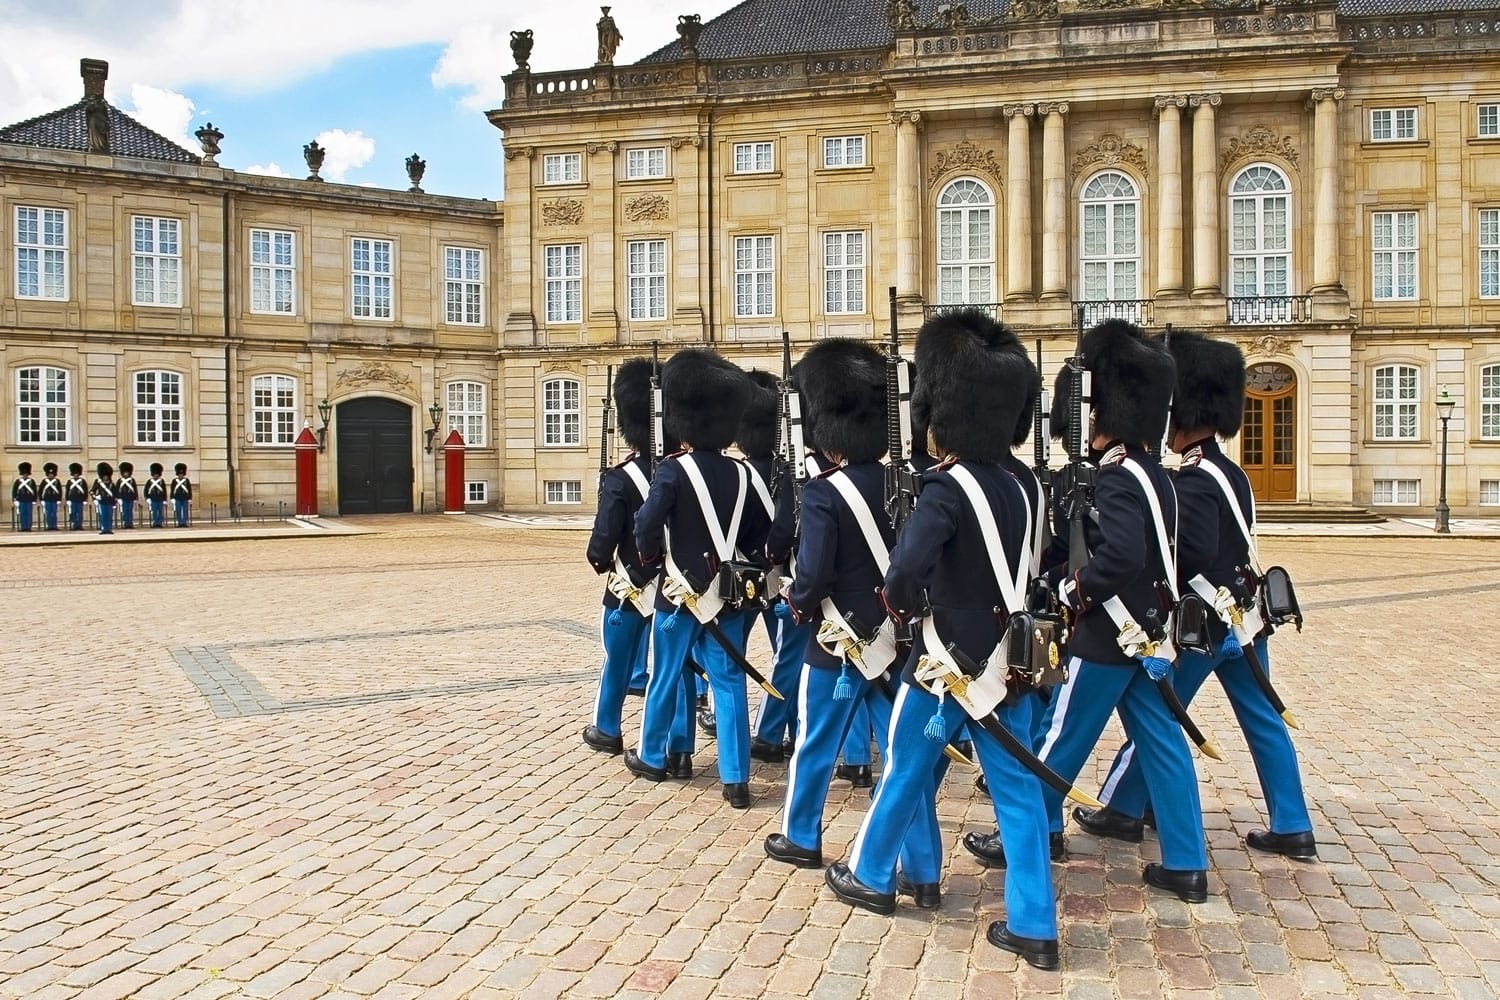 Royal Guard in Amalienborg Castle in Copenhagen in Denmark